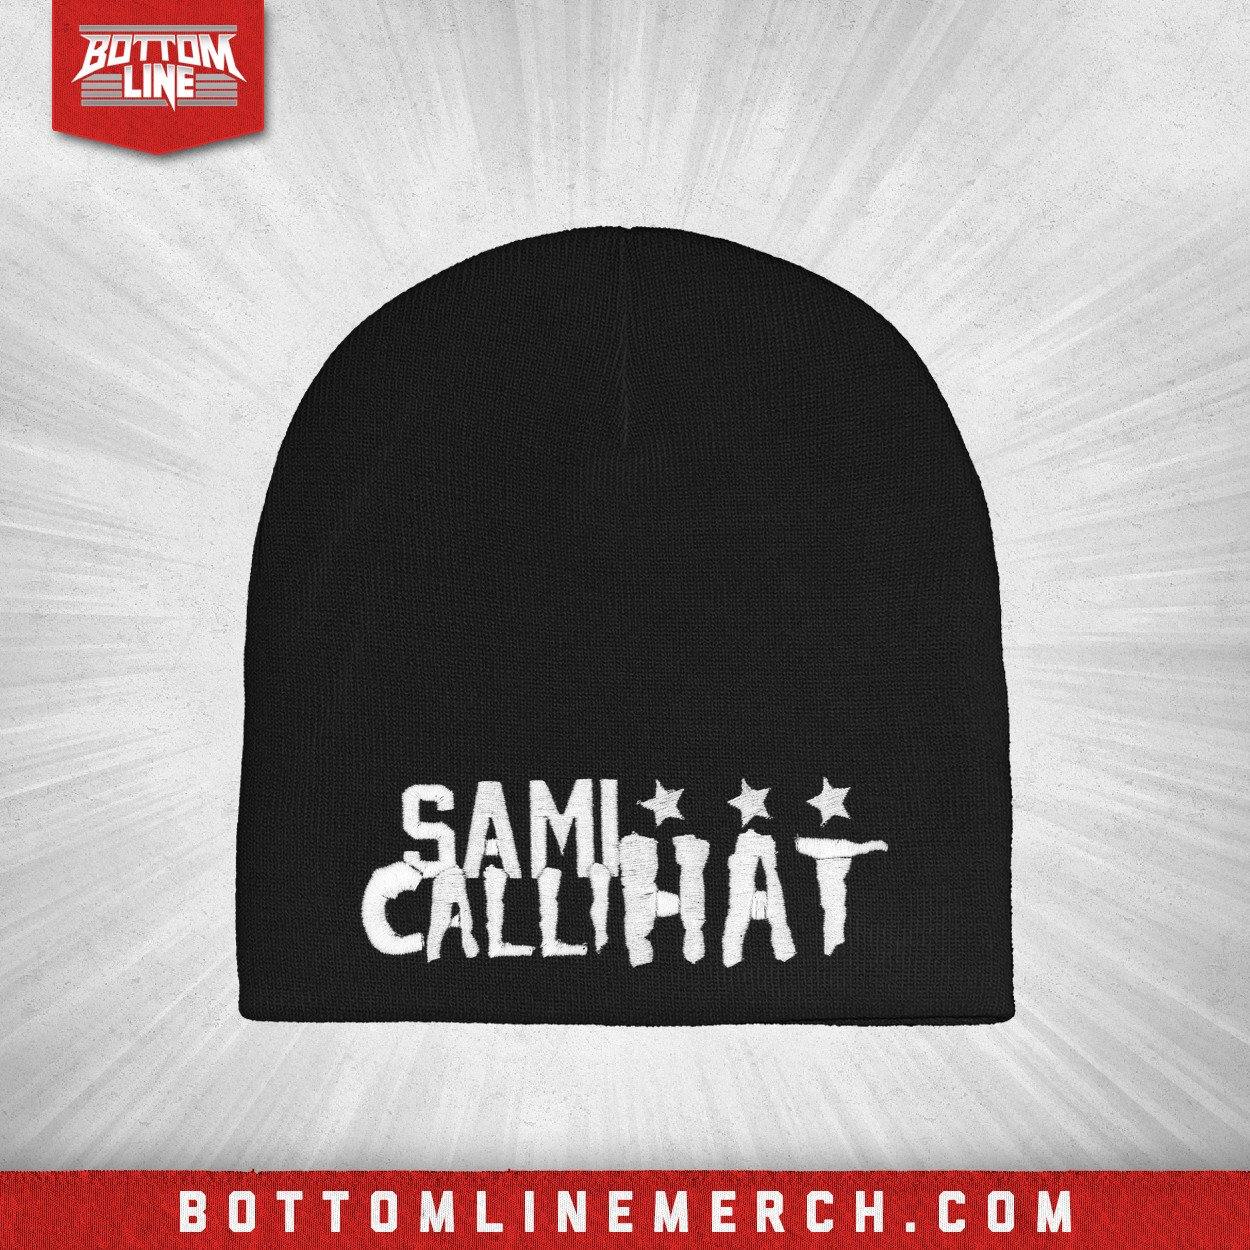 Buy Now – Sami Callihan "Callihat" Skull Cap – Wrestler & Wrestling Merch – Bottom Line